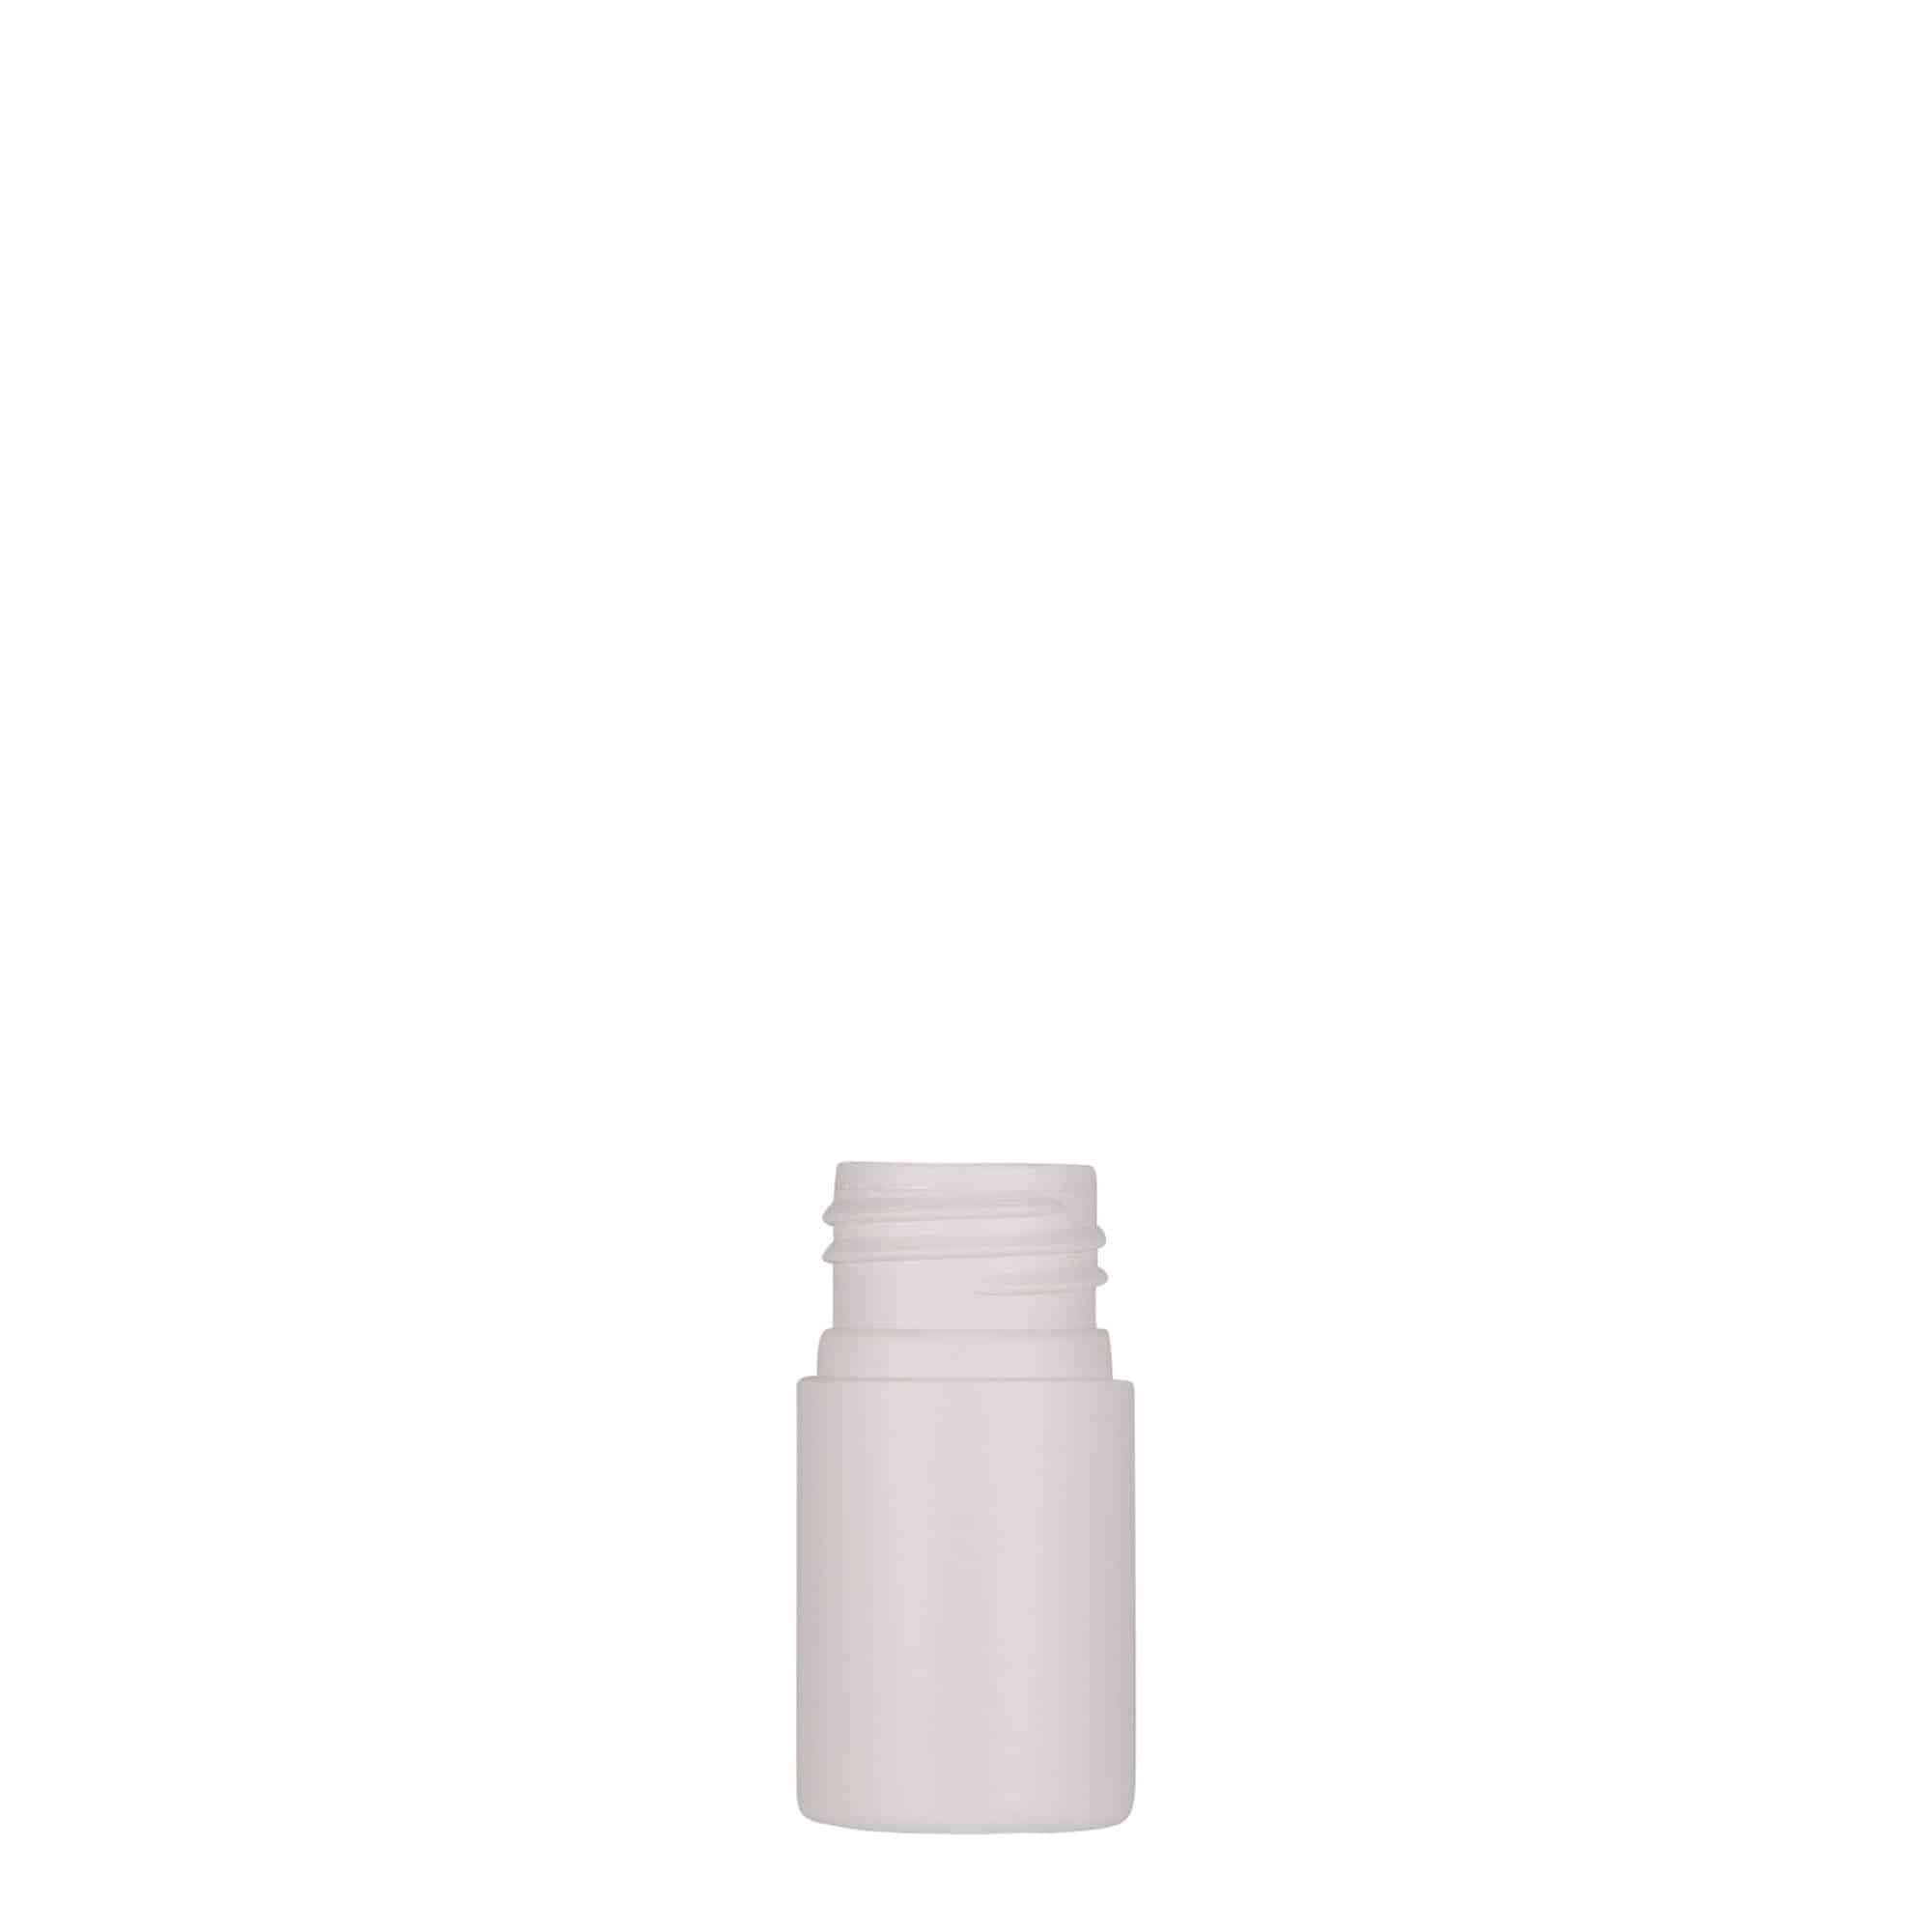 15 ml plastic bottle 'Tuffy', HDPE, white, closure: GPI 24/410